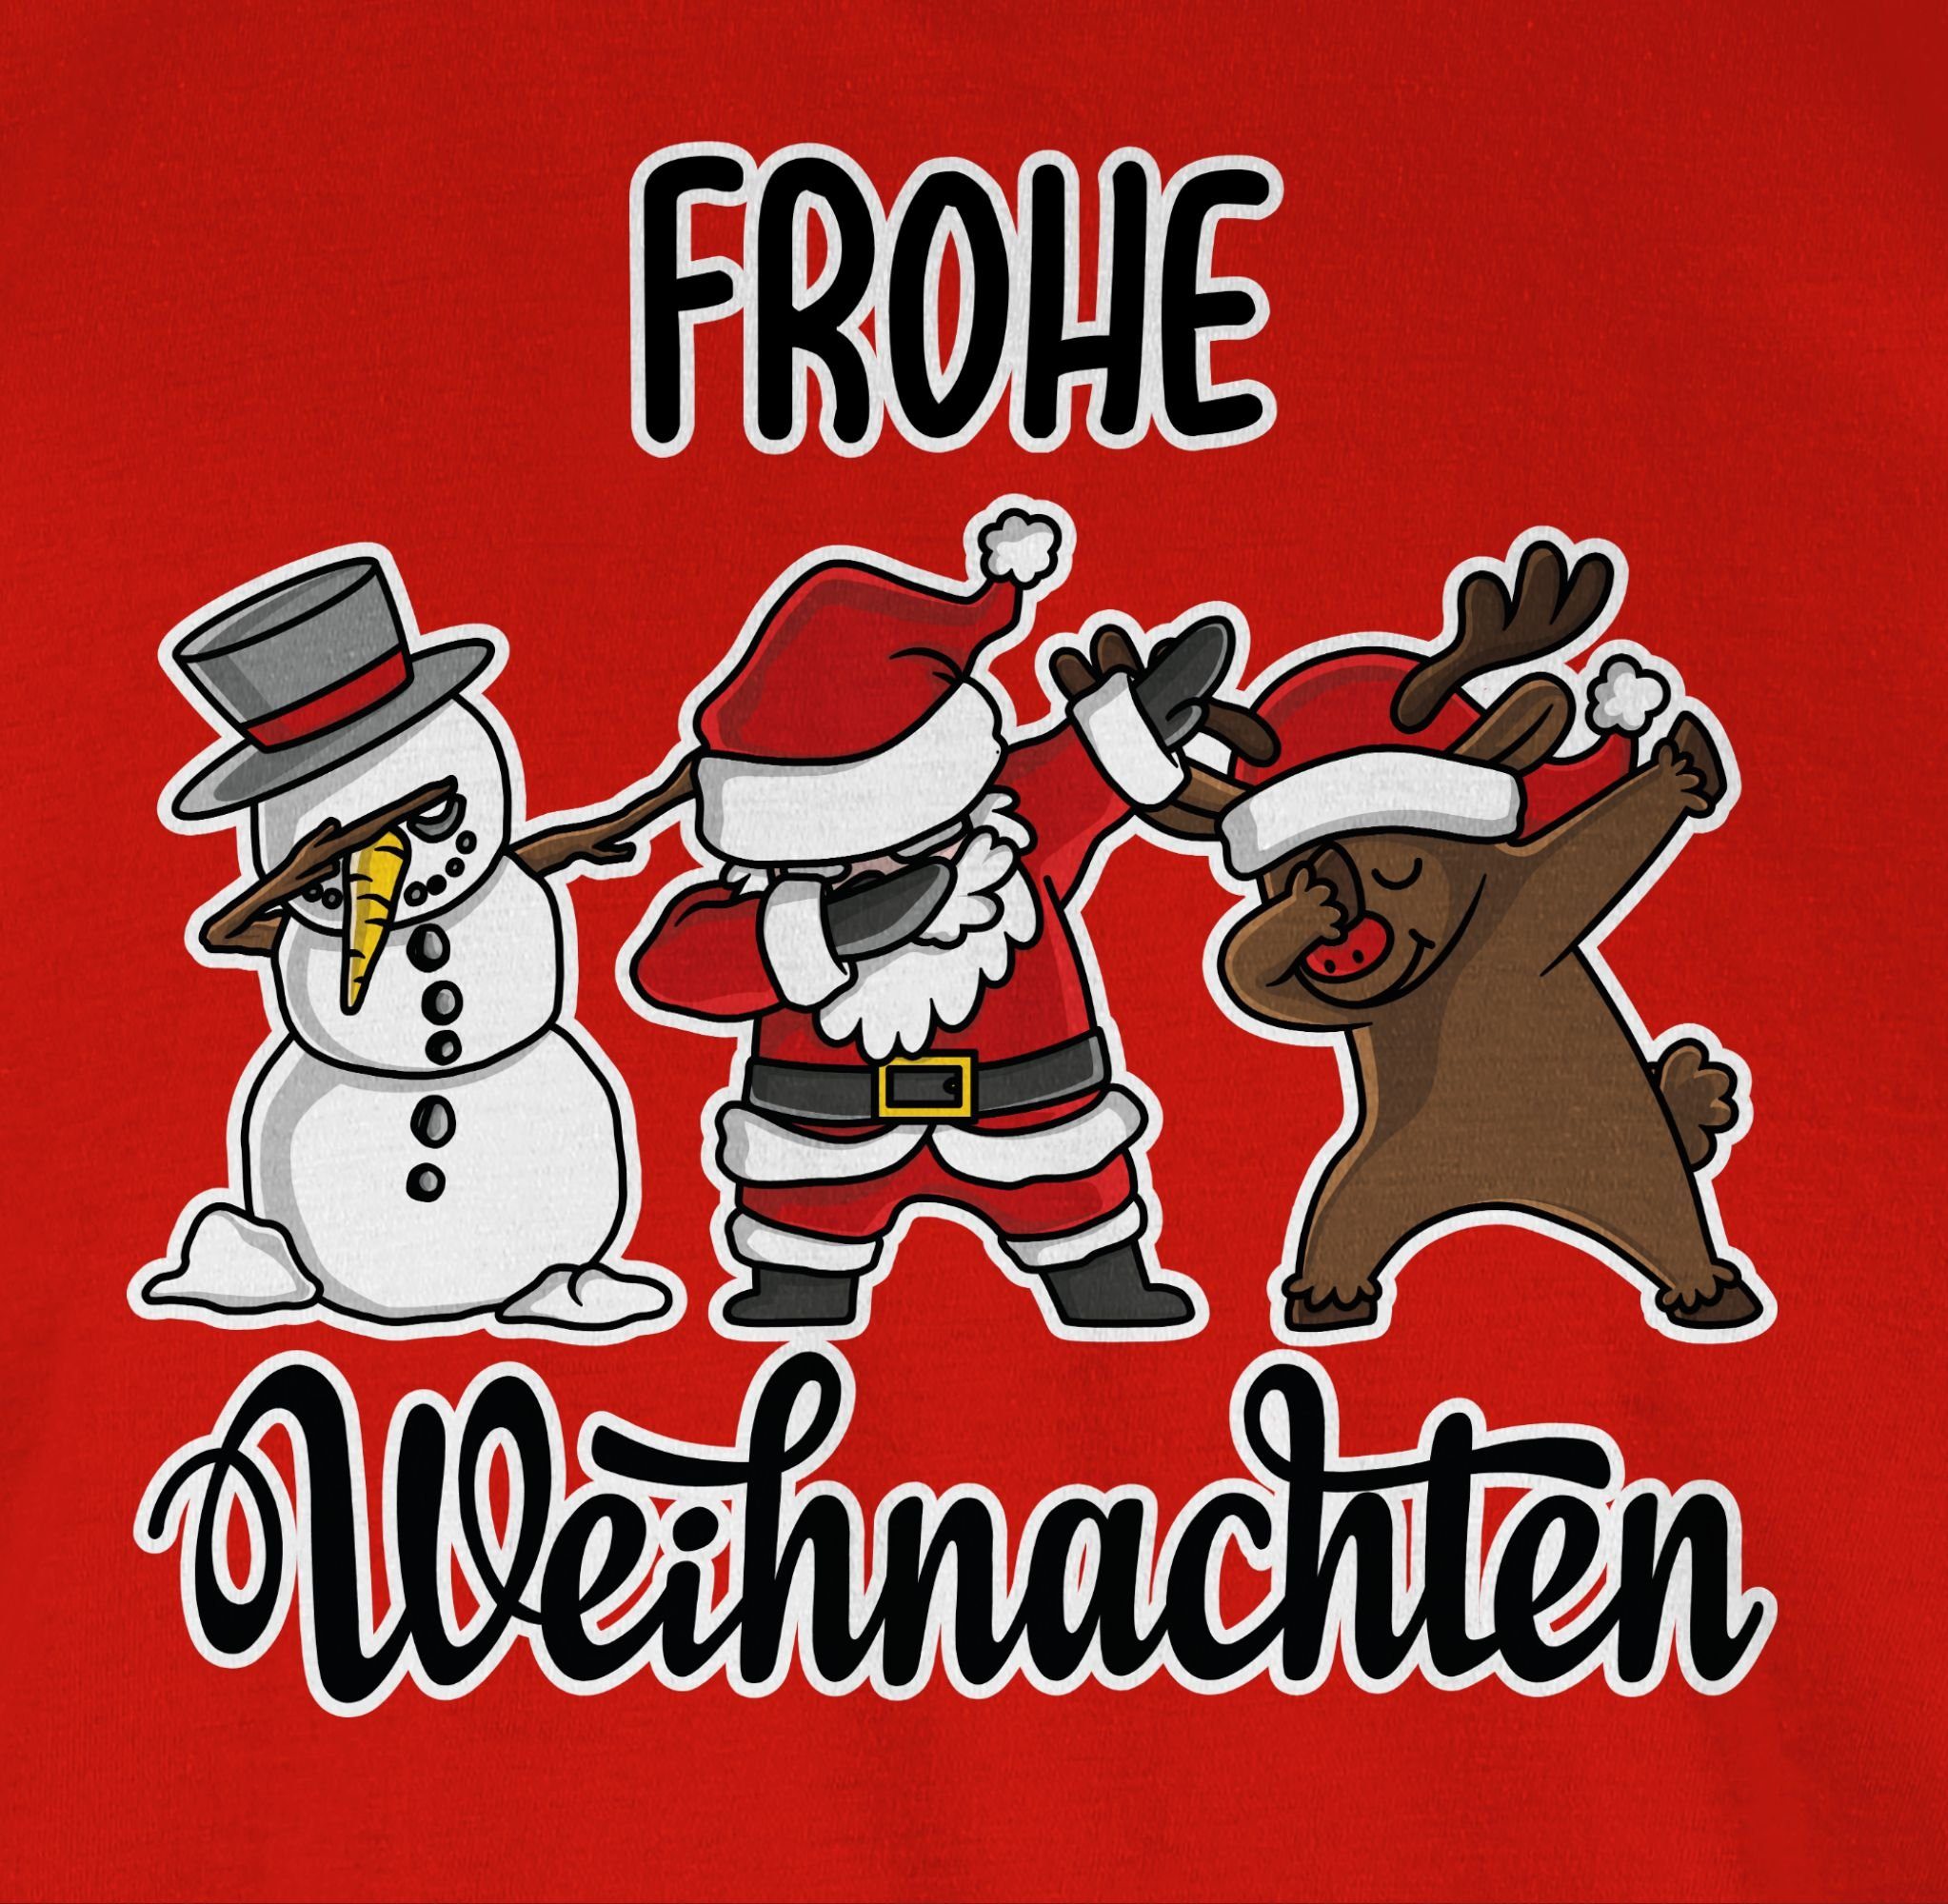 Kleidung Rot Weihachten Shirtracer Dabbing Weihnachten 02 Frohe T-Shirt